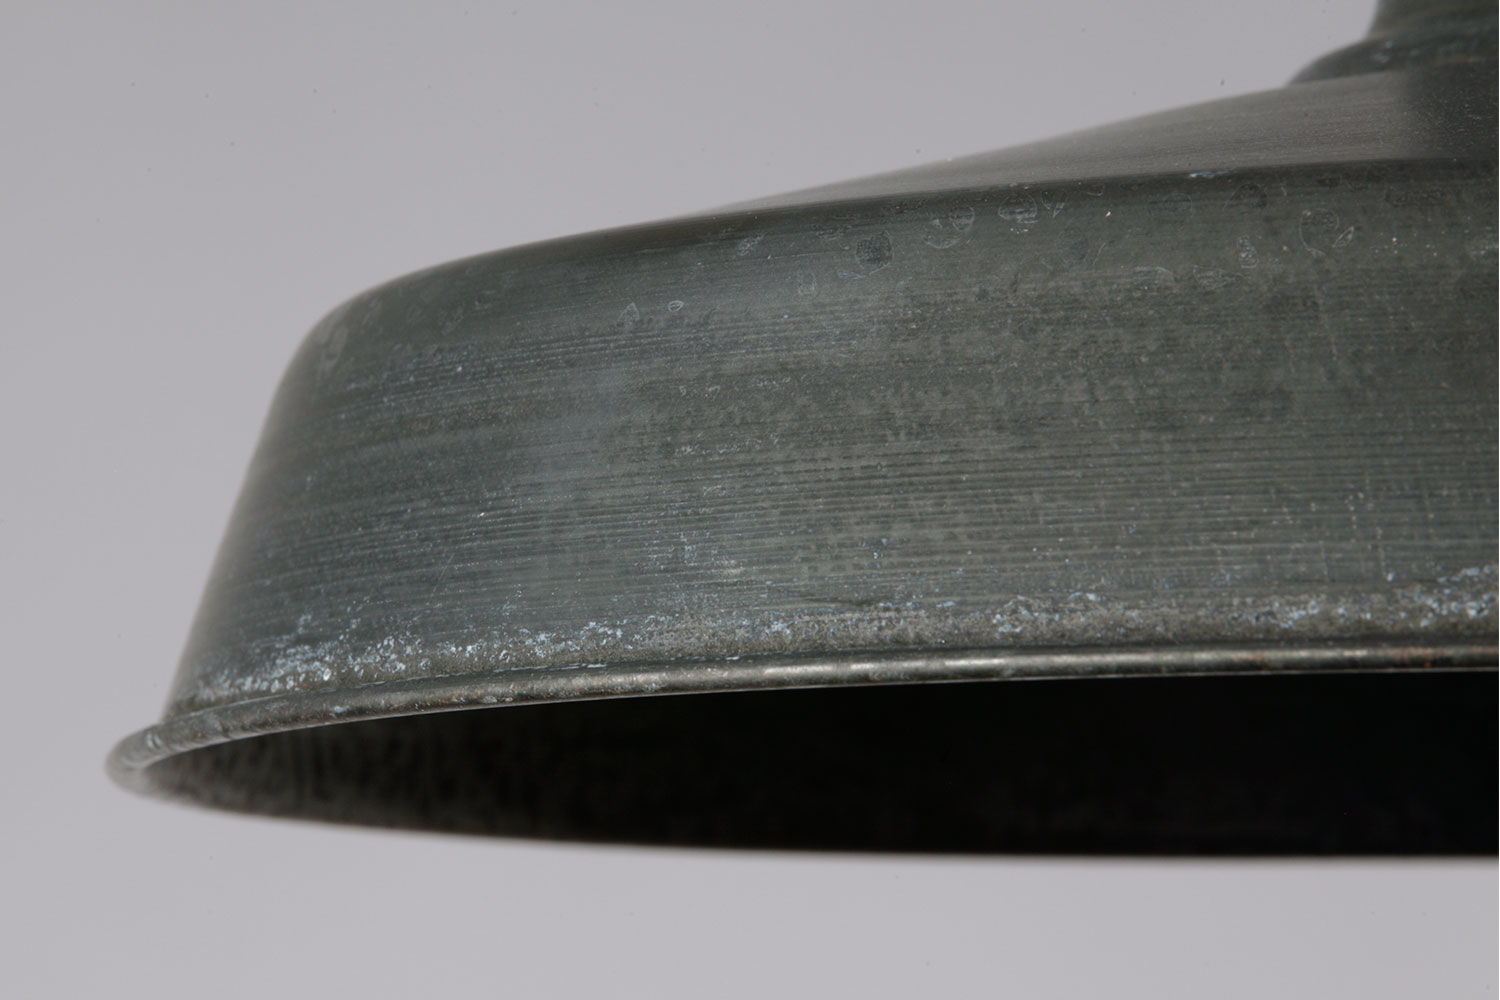 Robuste Fabrik-Hängeleuchte mit Kette, div. Messing-Oberflächen, Ø 45 cm: „Messing schwarz patiniert“